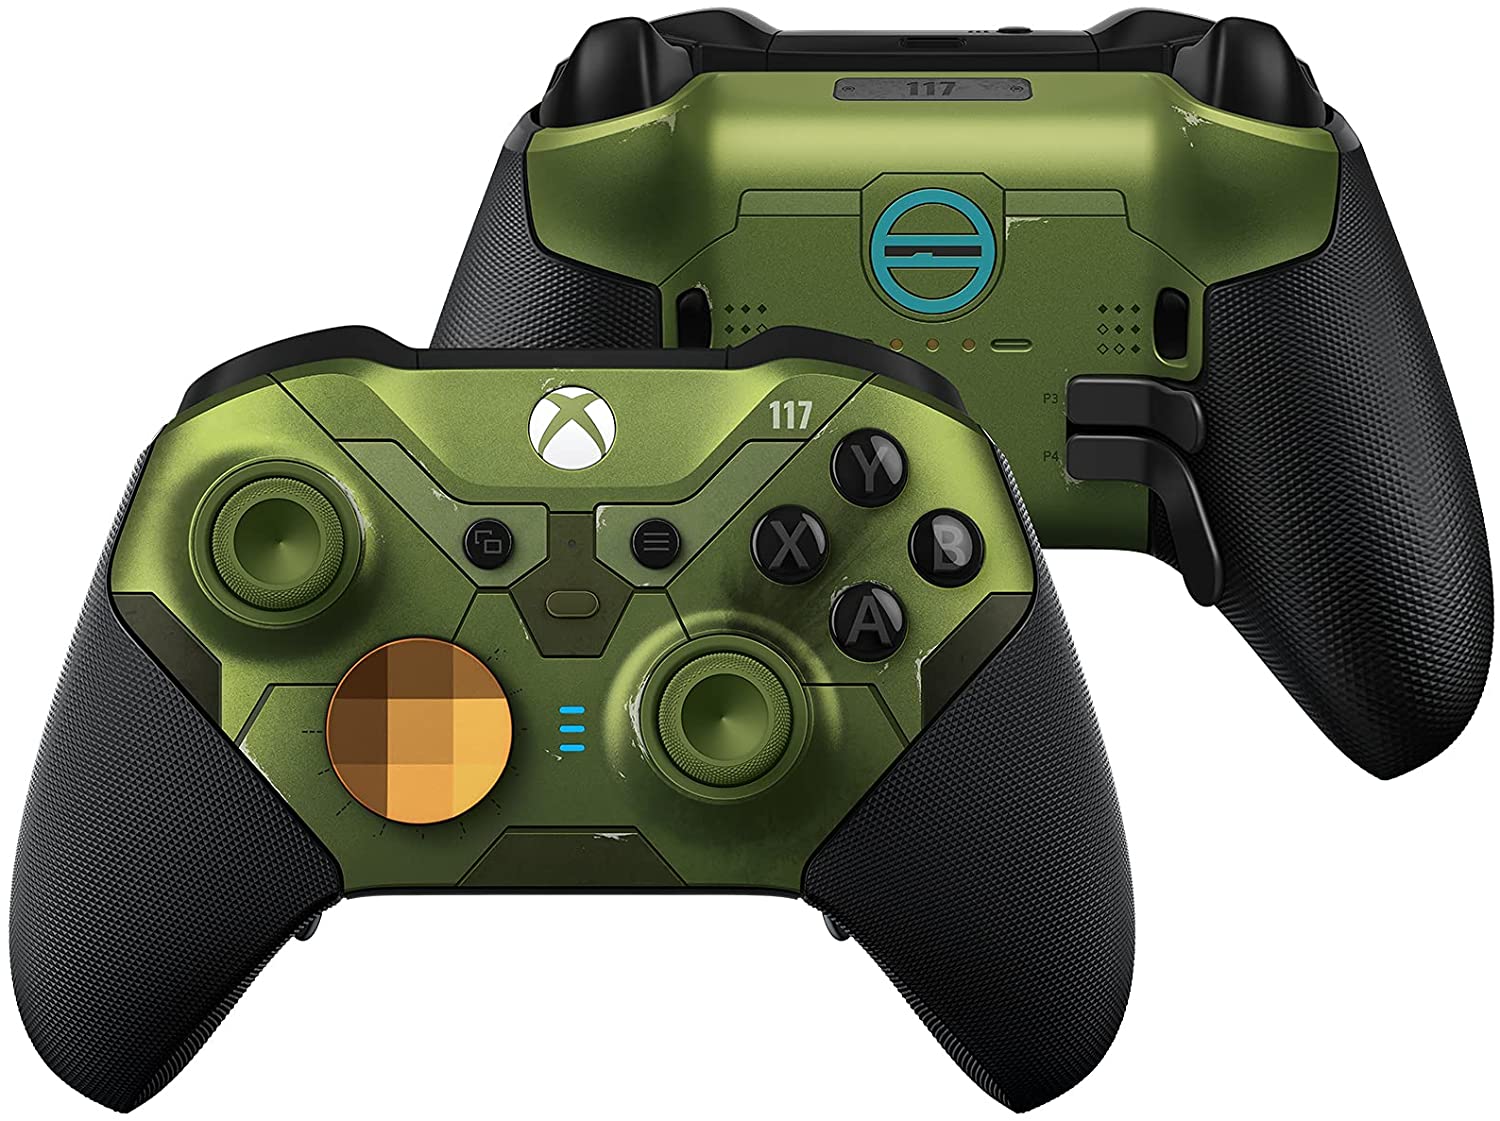 予約開始】『Xbox Elite ワイヤレス コントローラー シリーズ 2 Halo 